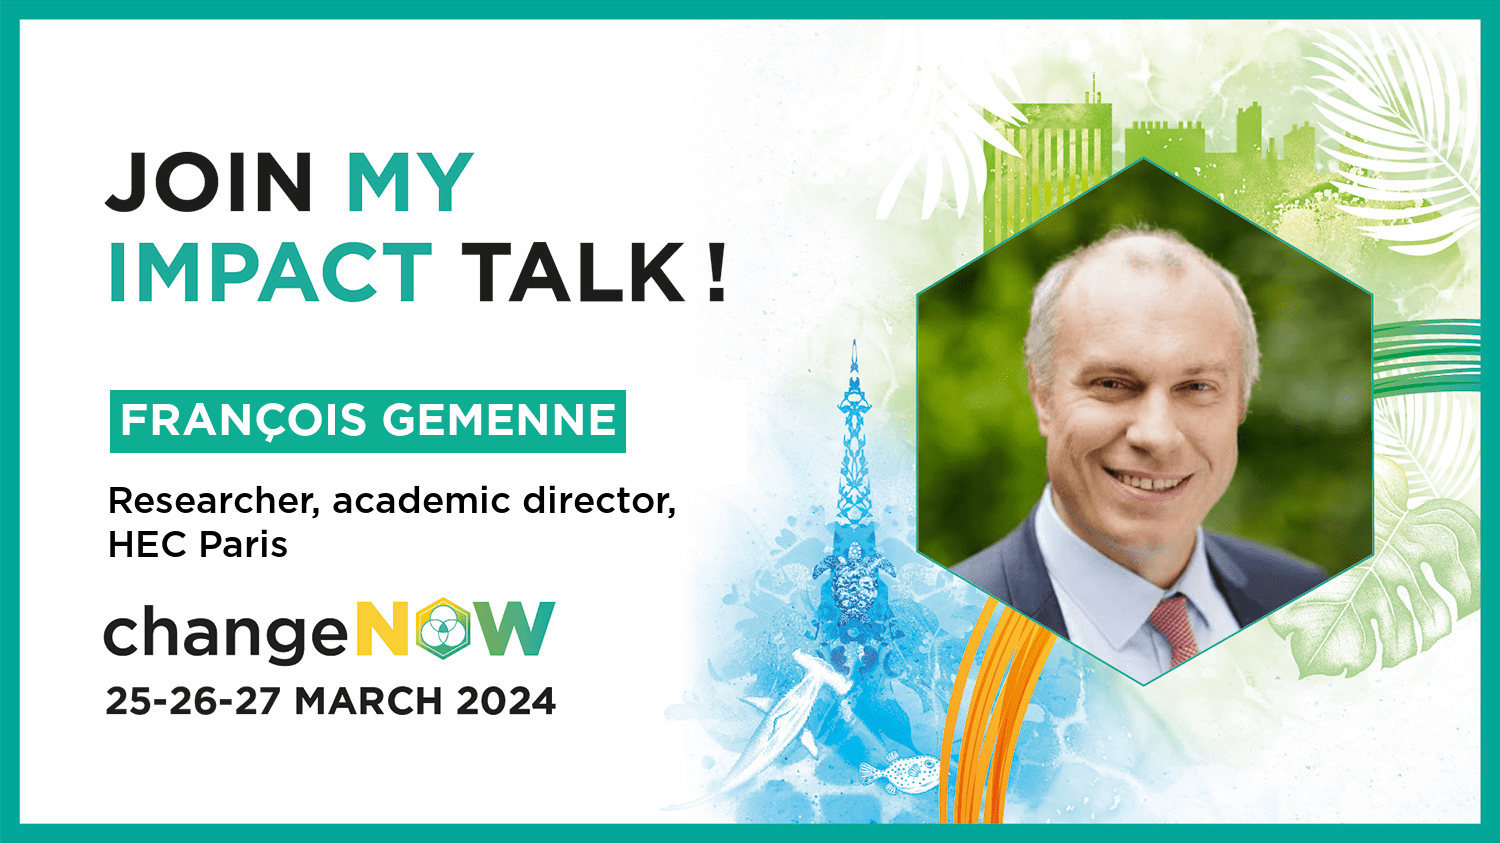 François Gemenne, HEC Paris professor at ChangeNow 2024